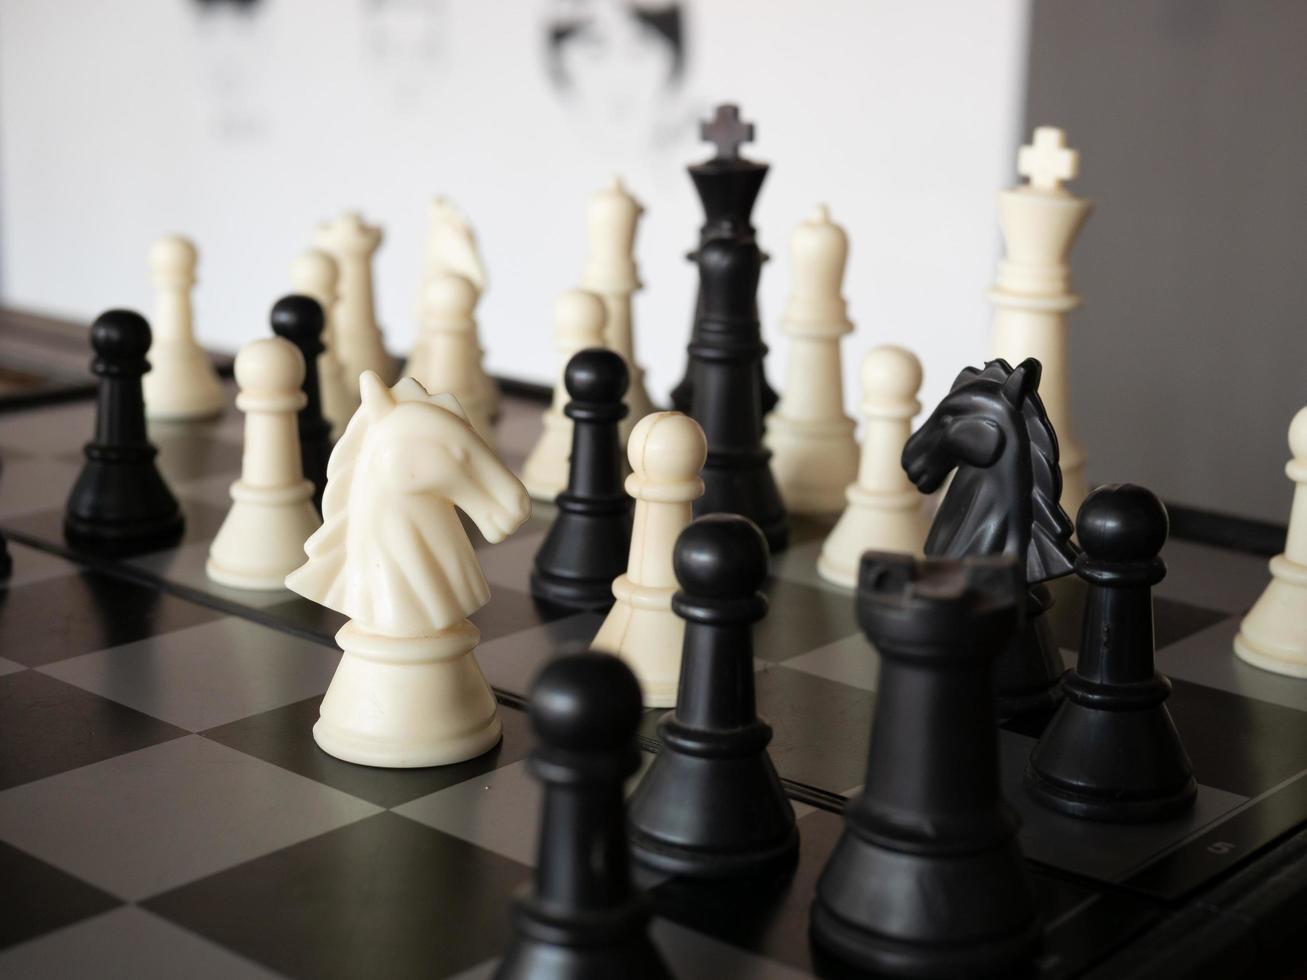 schaakbordspel met focus op zwart en wit foto